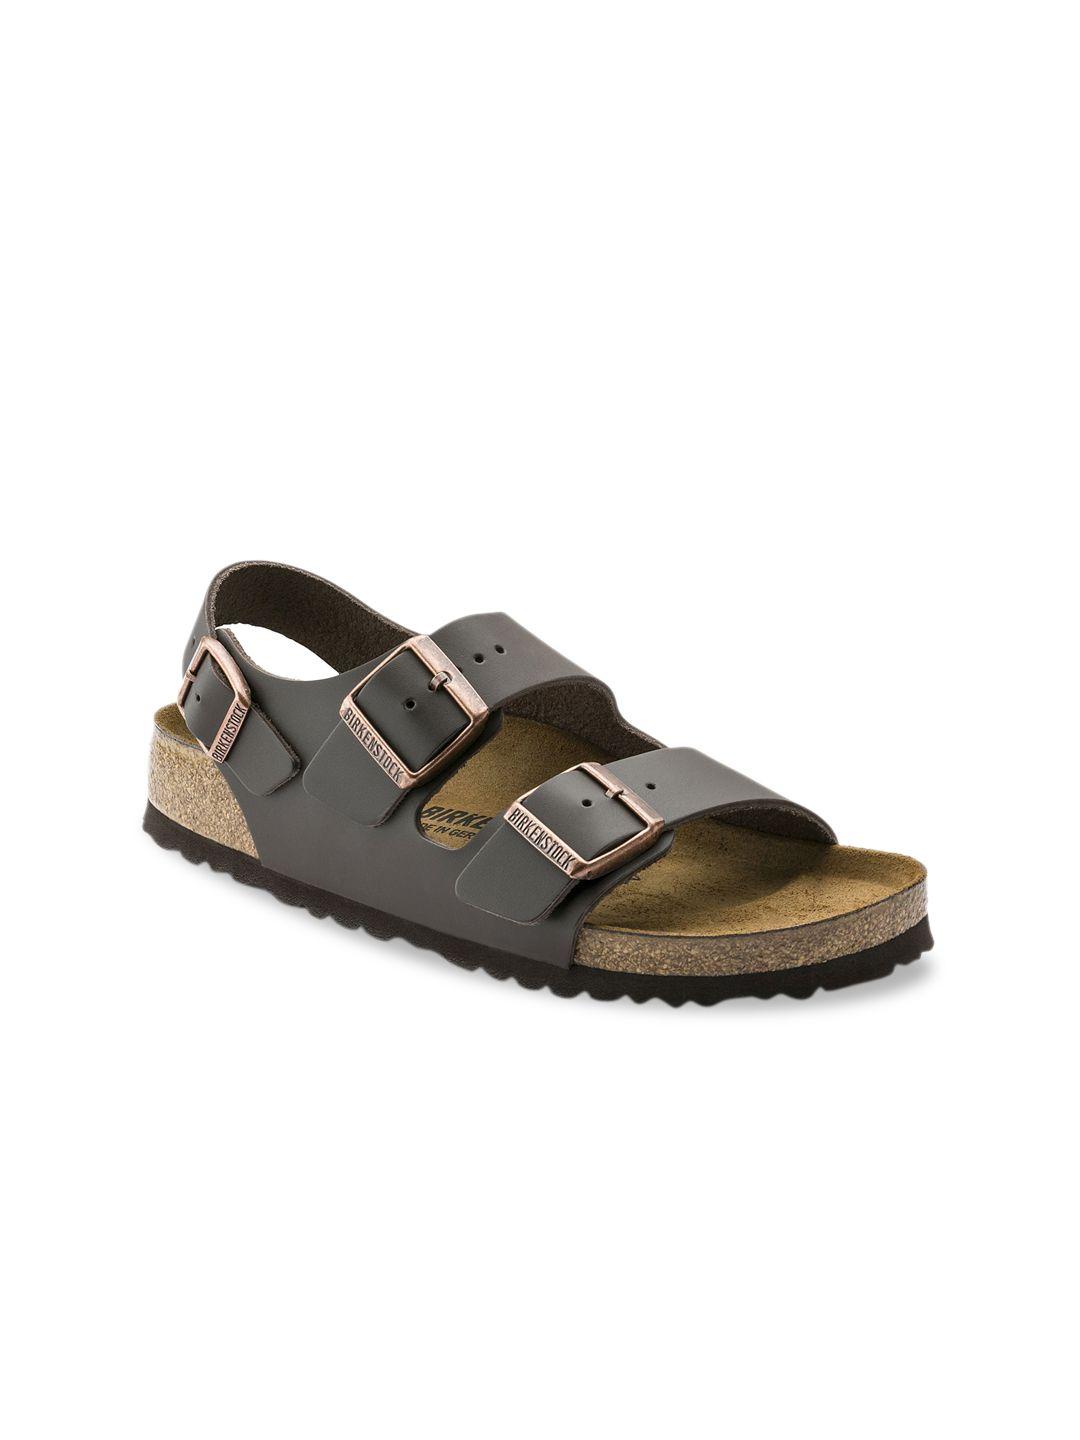 birkenstock unisex brown regular width milano comfort sandals